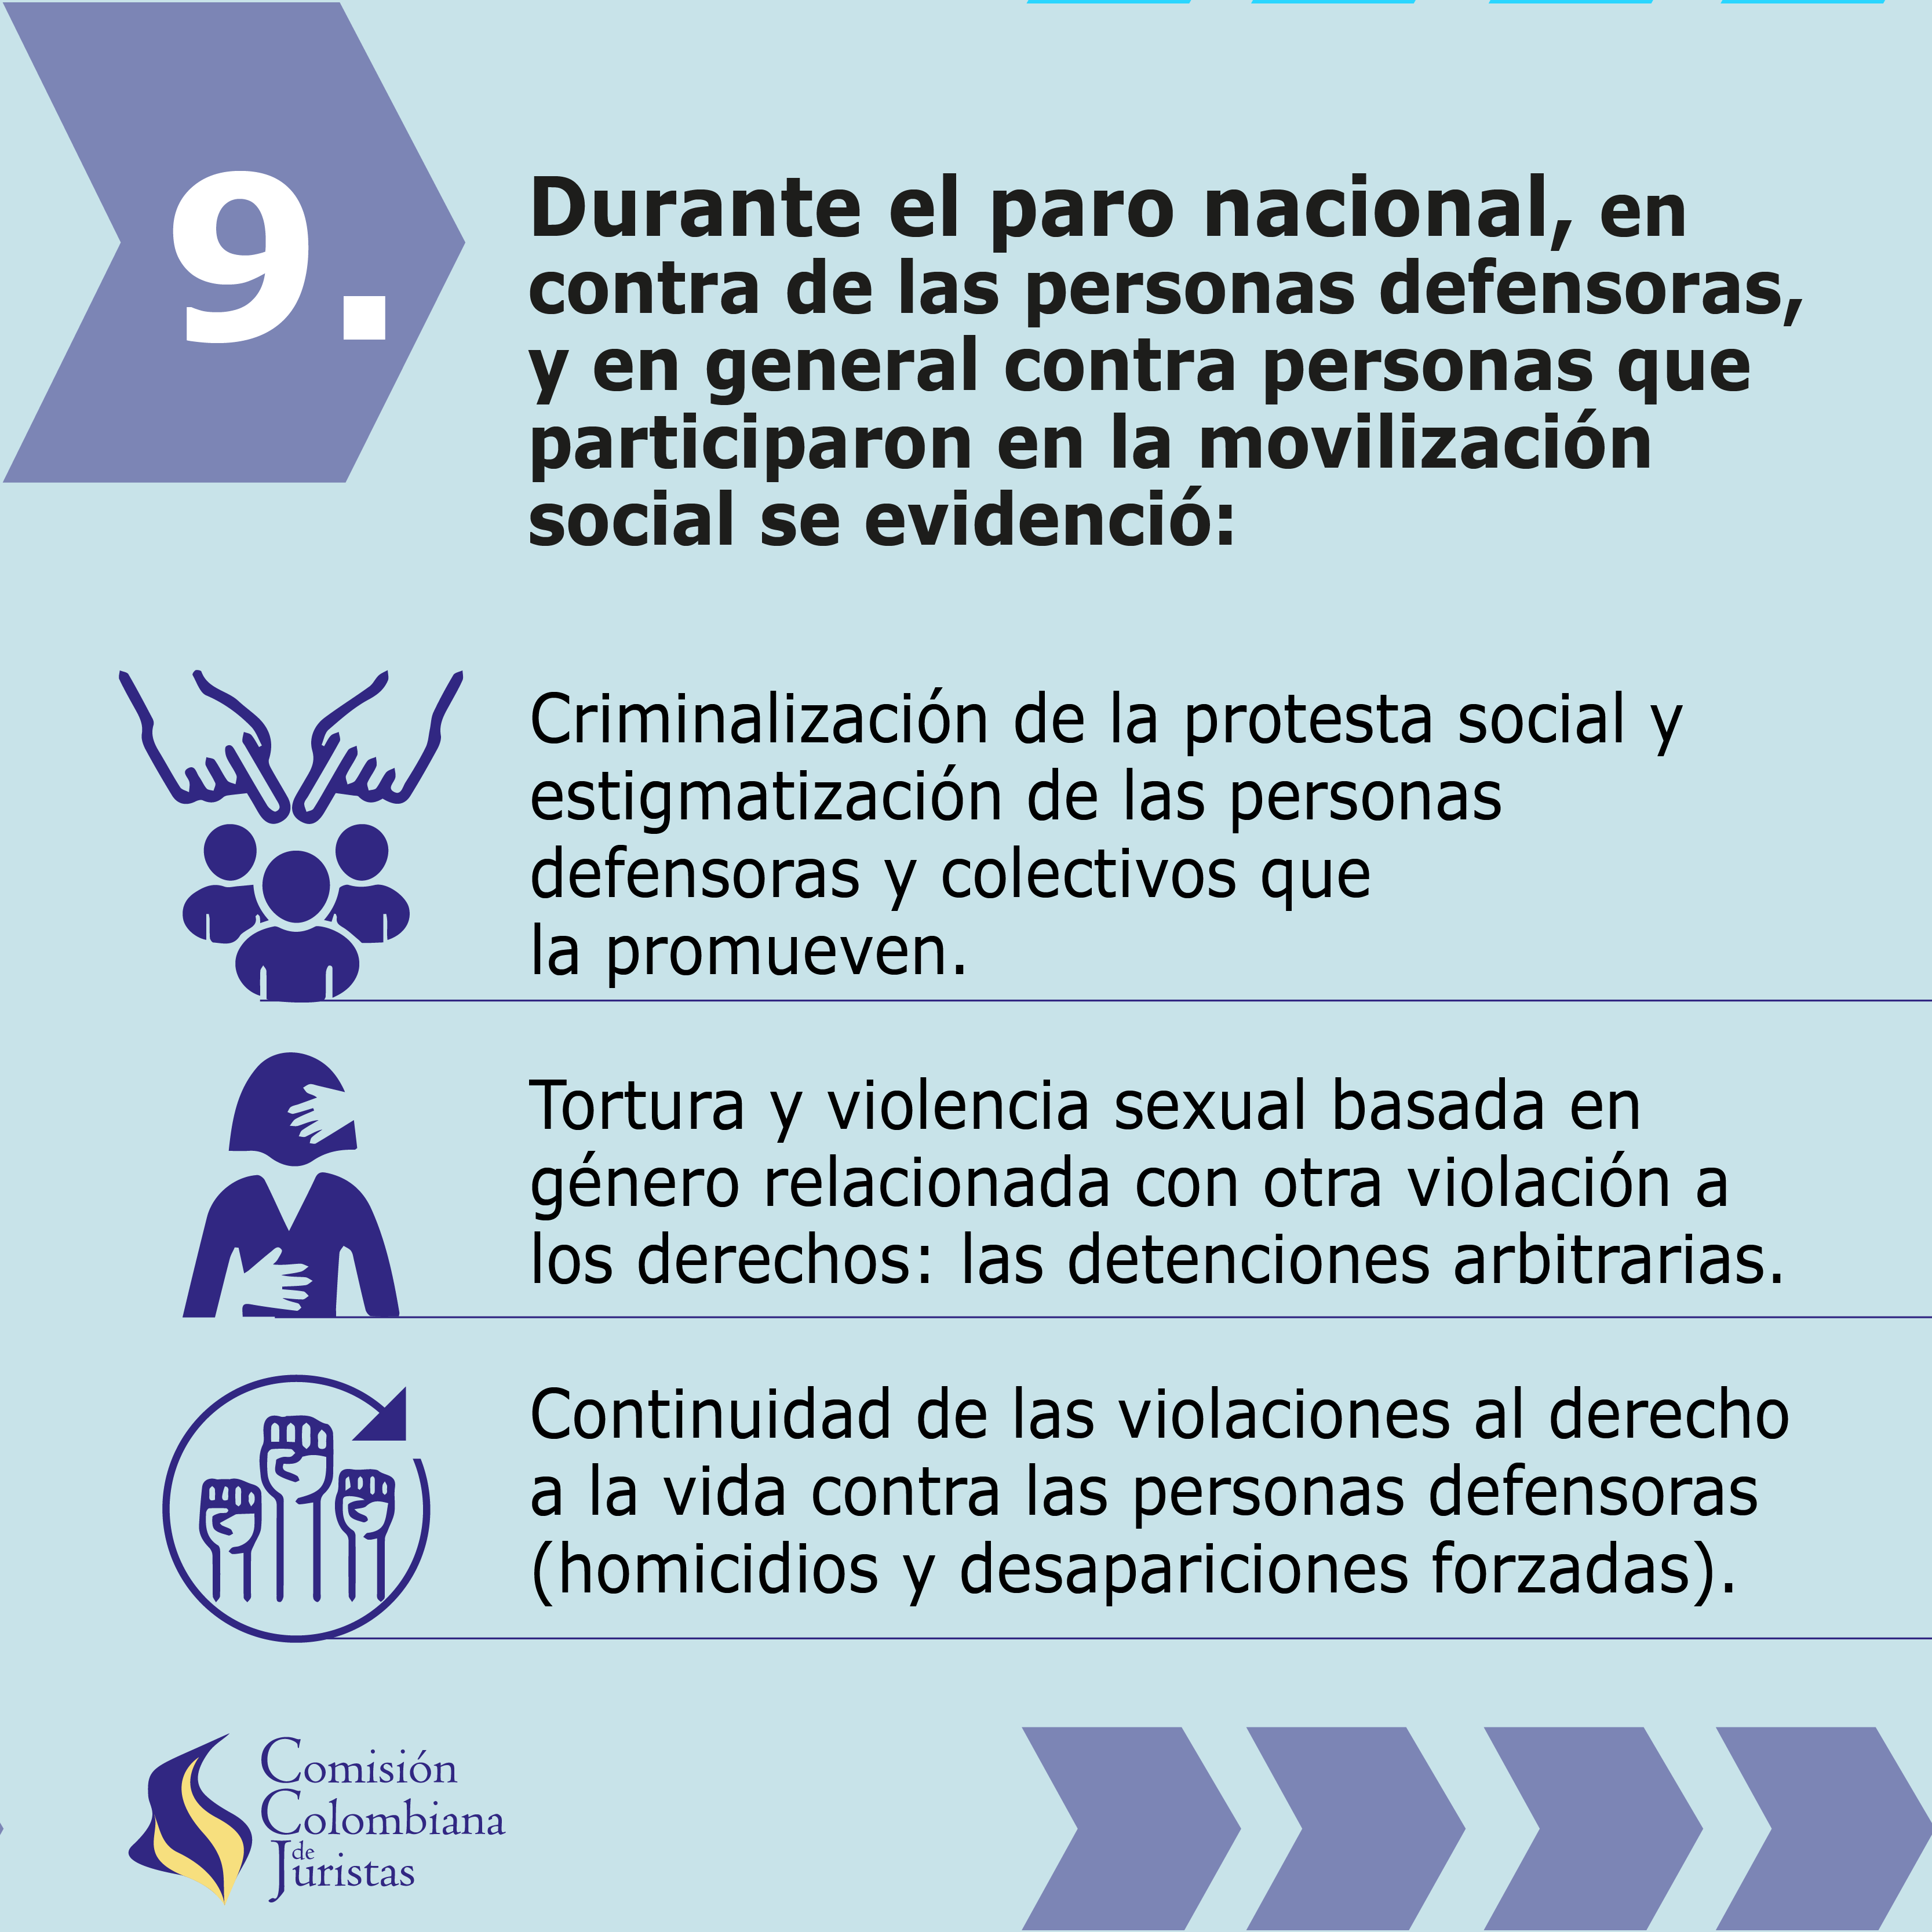 Imagen 9 de Boletín: Violaciones a los derechos de las personas defensoras entre el 1 de enero y el 31 de mayo, especialmente en el marco del paro nacional